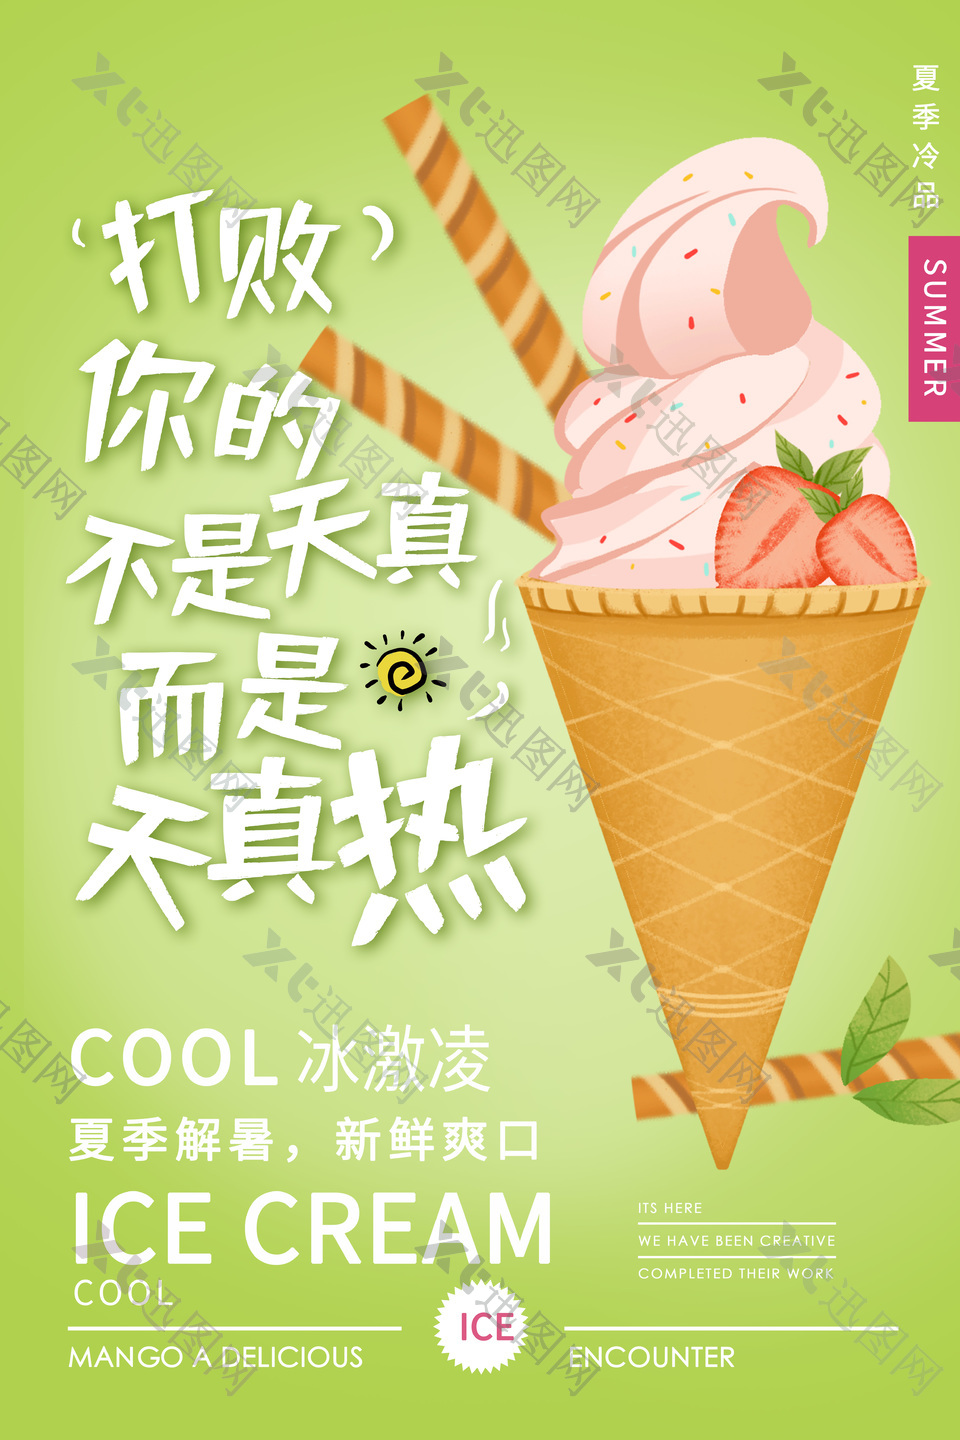 绿色主题甜筒冰淇淋创意海报设计